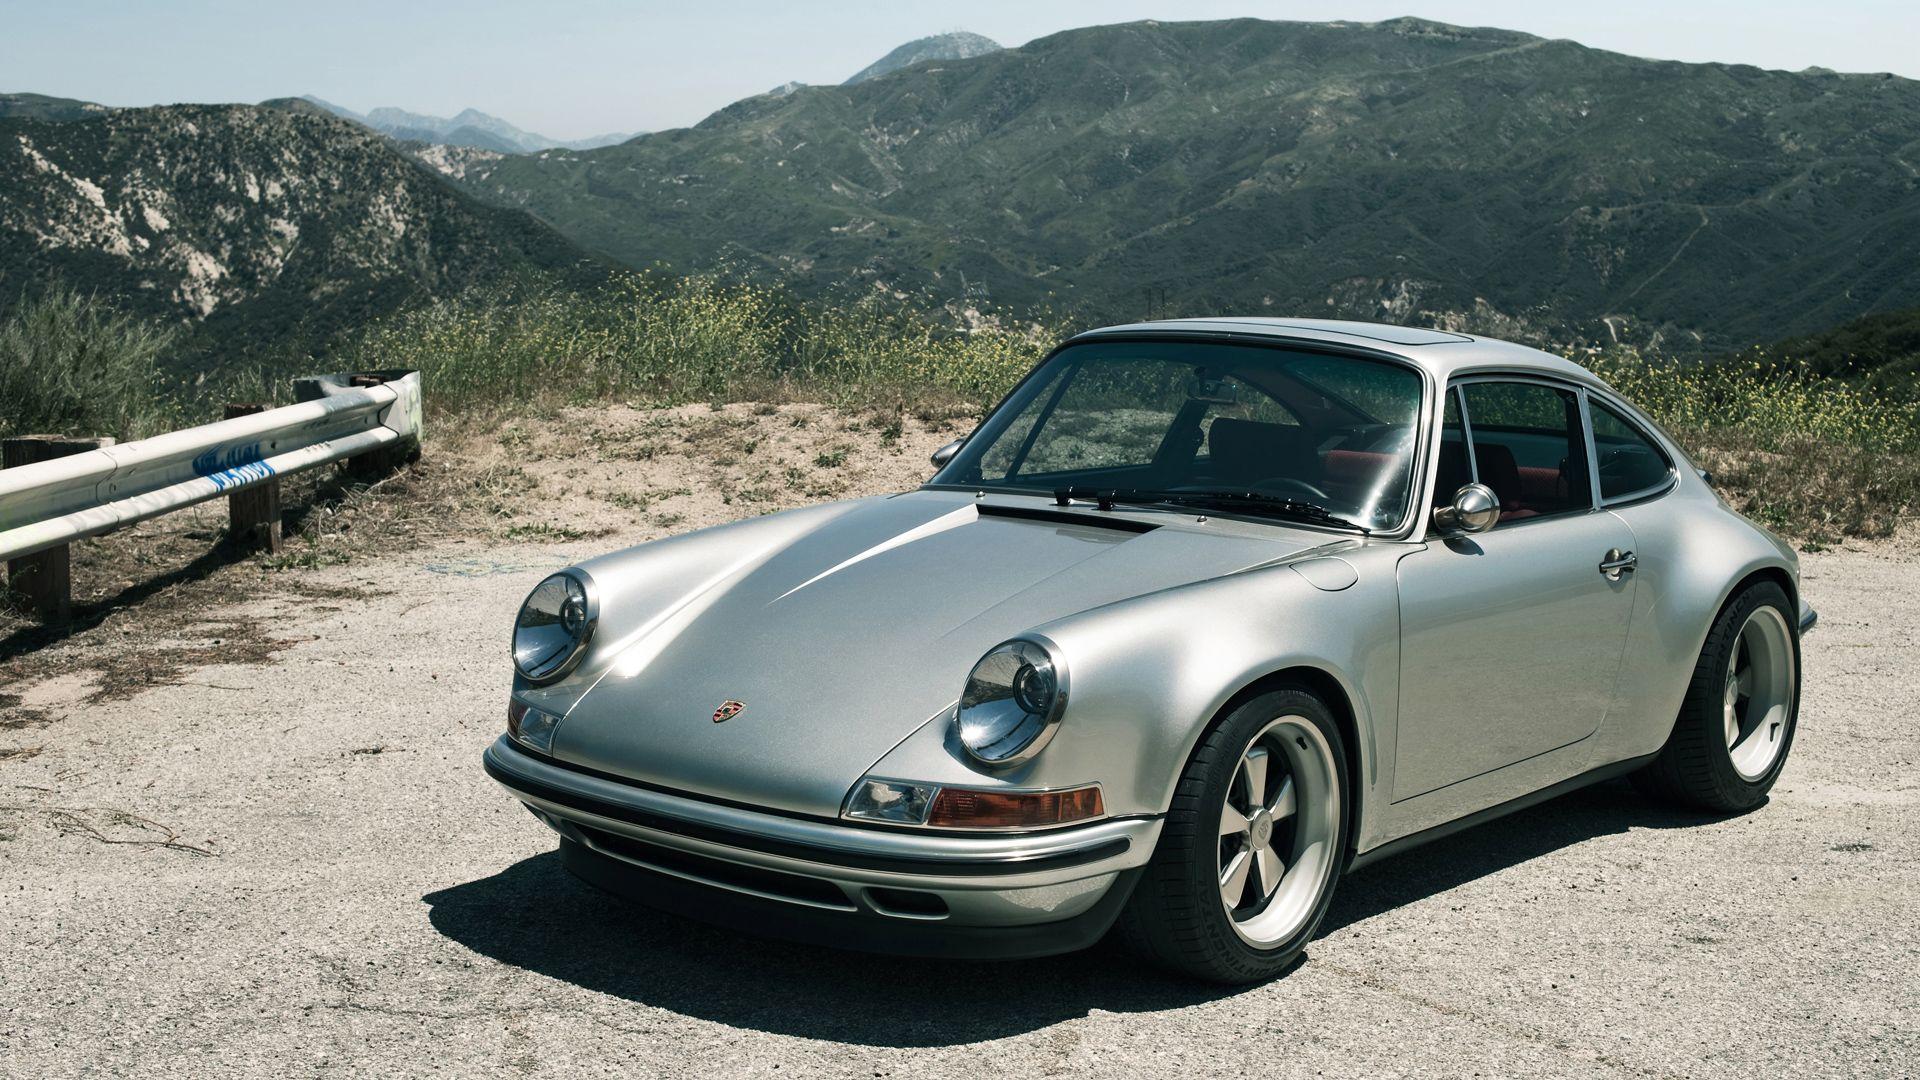 Classic Porsche Wallpapers Top Free Classic Porsche Backgrounds Wallpaperaccess